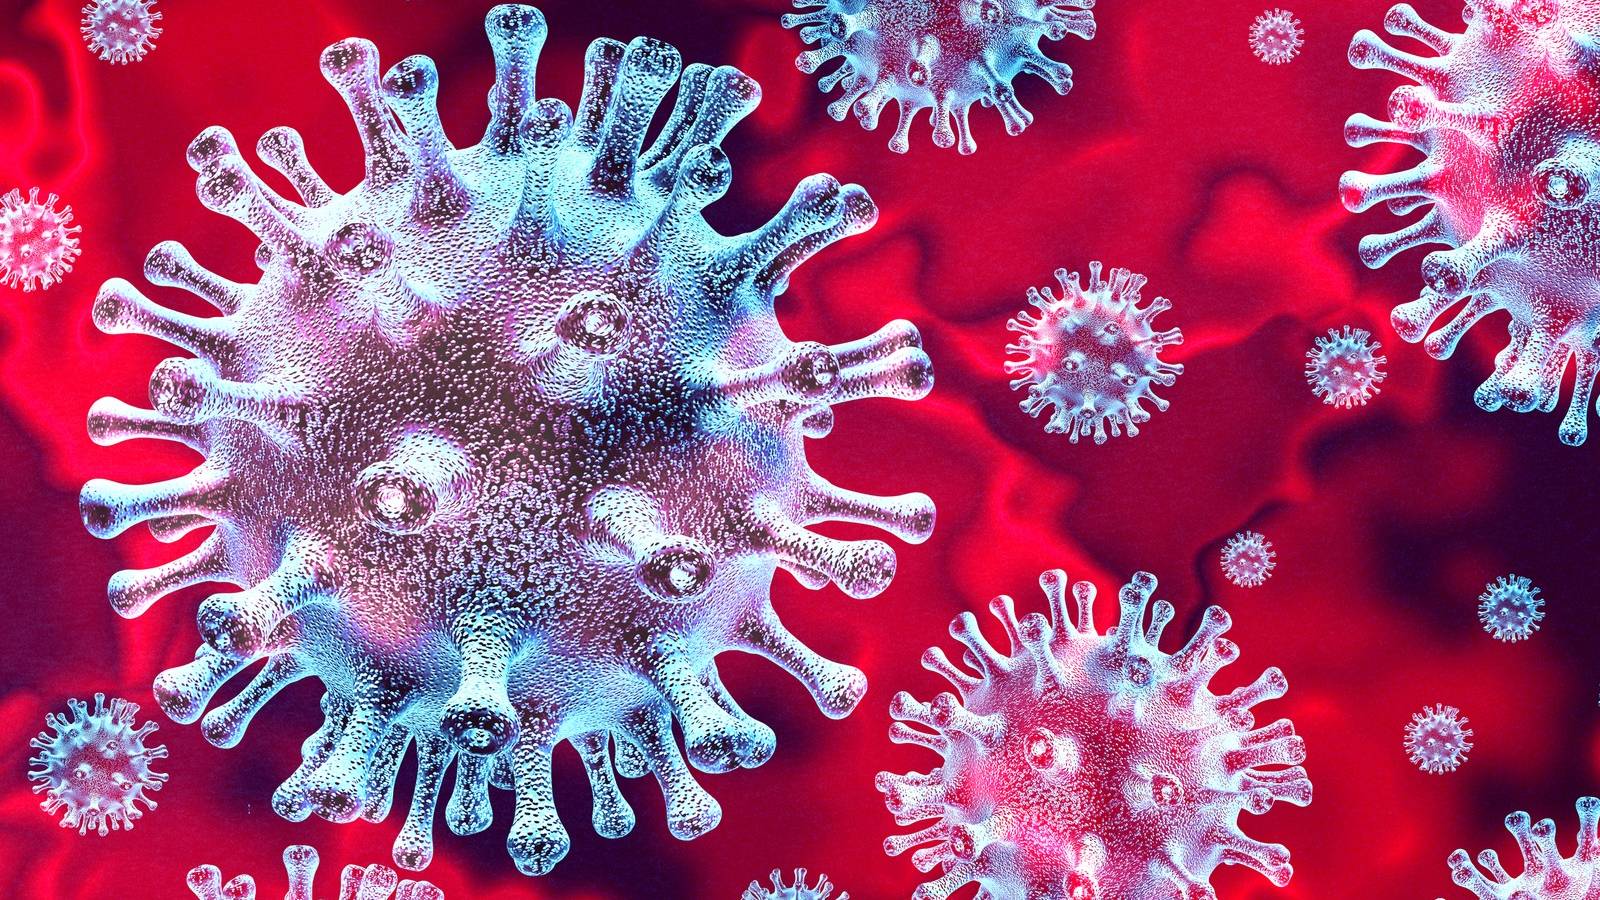 Coronavirus Rumänien brådskande begäran